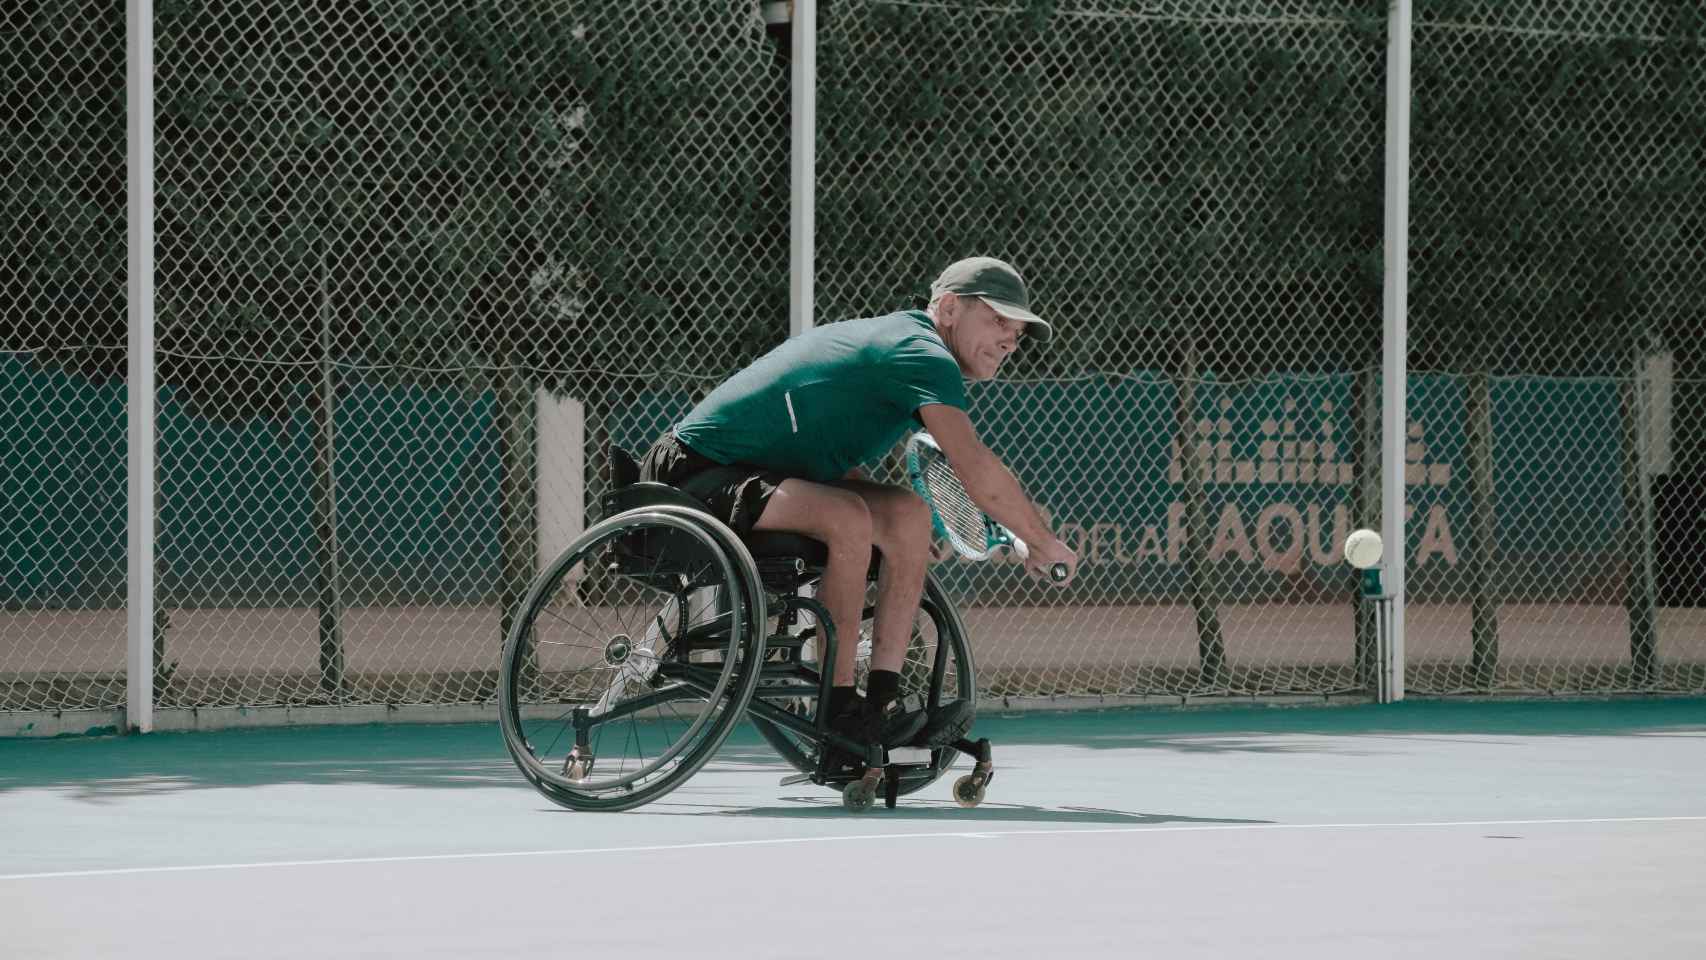 VIII Edición del Torneo ITF Wheelchair Fundación Emilio Sánchez Vicario